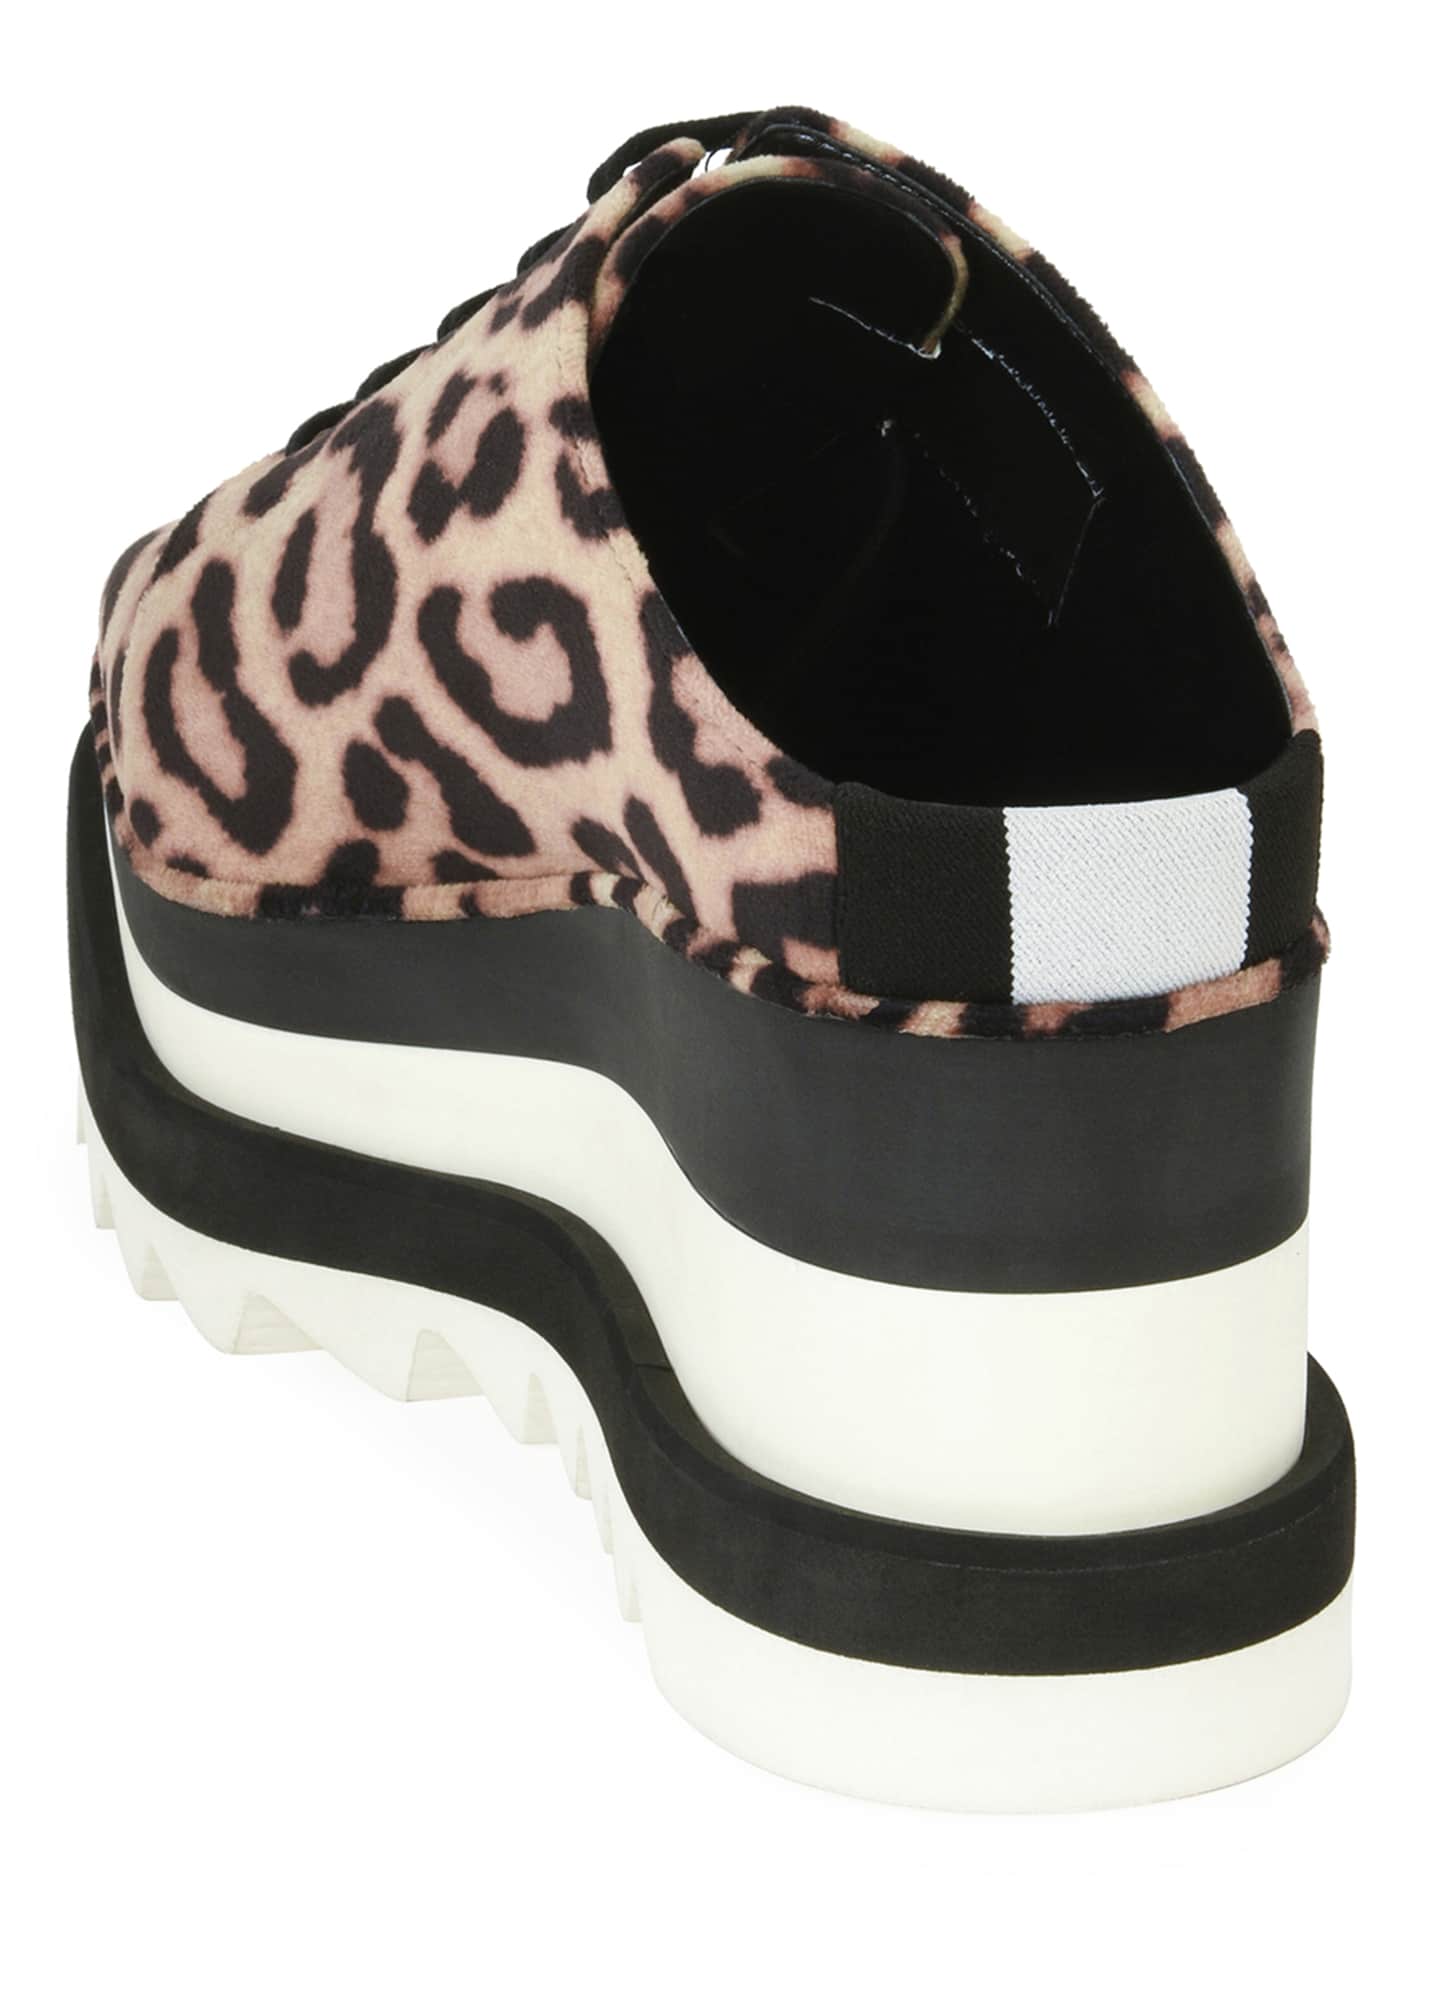 Stella McCartney Elyse Leopard-Print Platform Sneaker Mule - Bergdorf